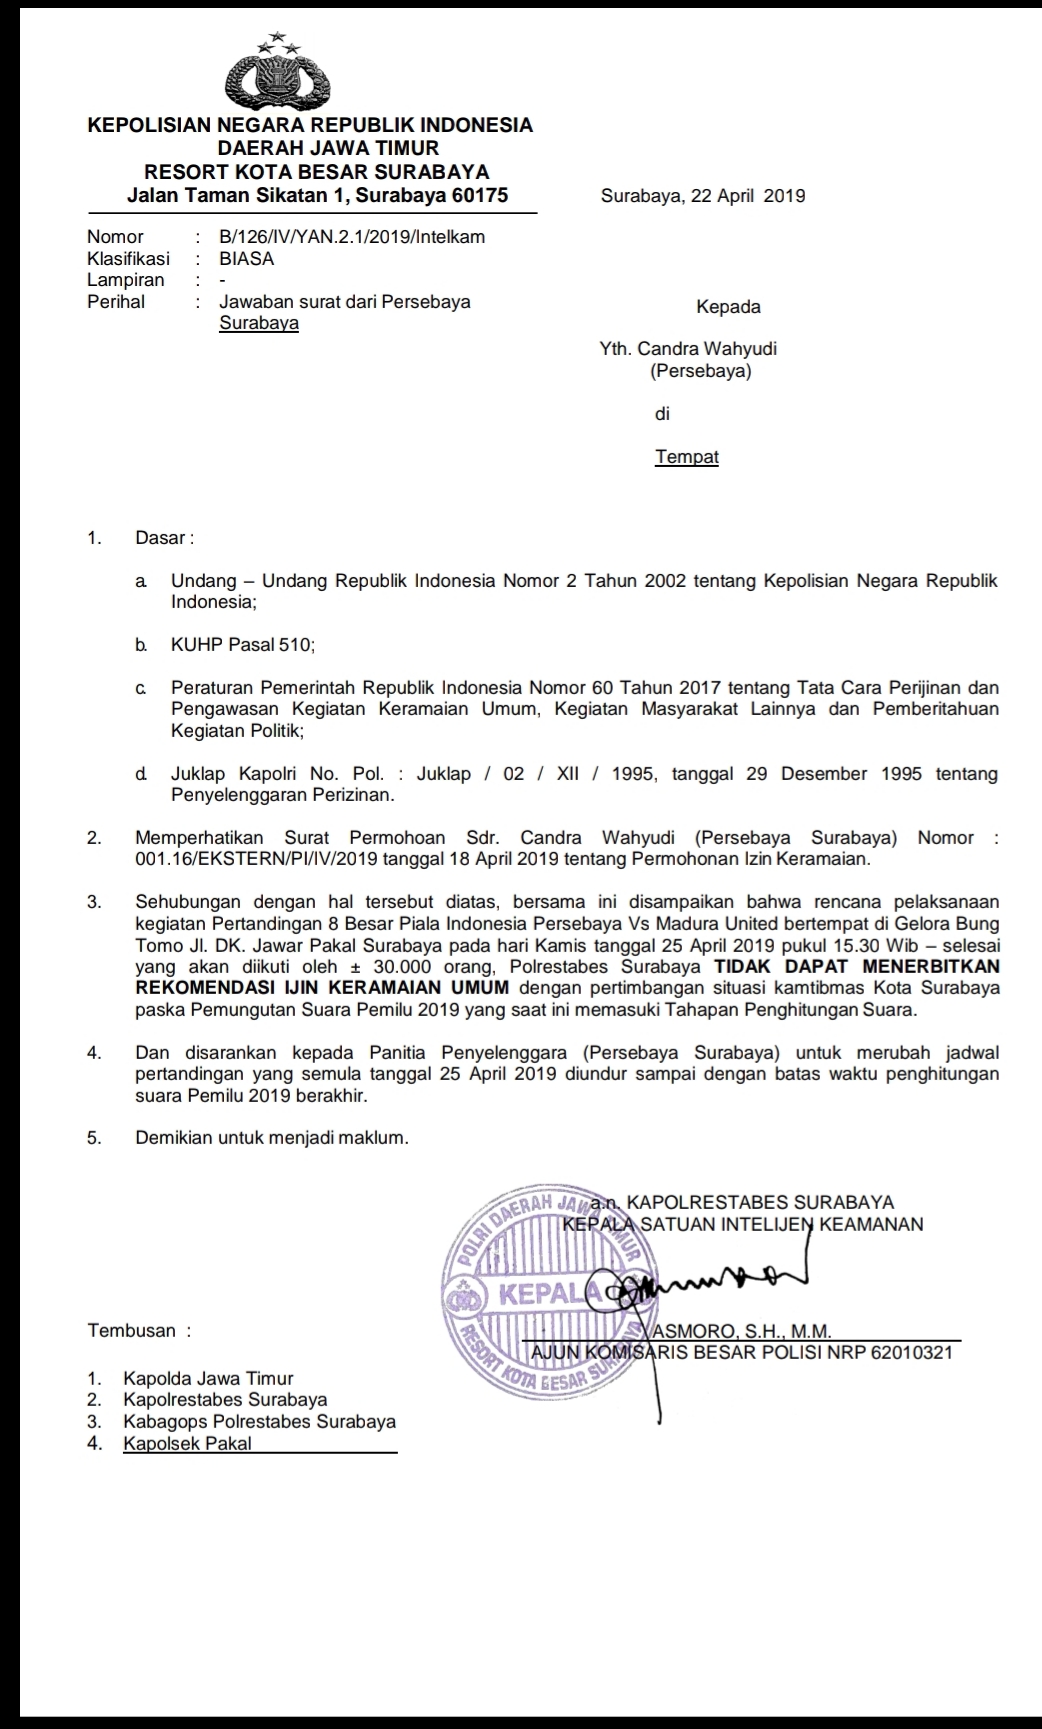 Surat keputusan dari Polrestabes Surabaya.